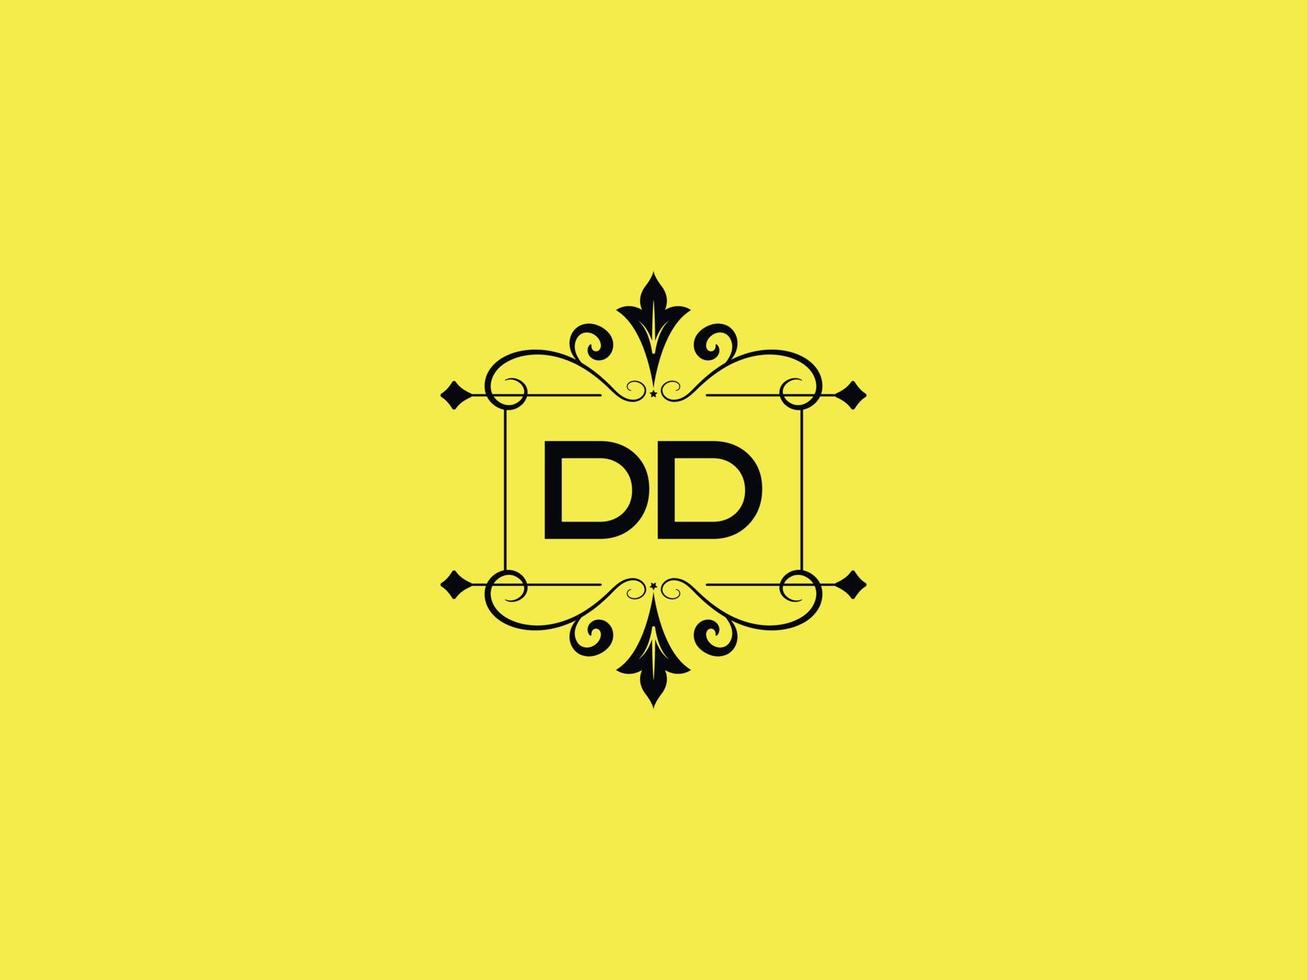 ícone colorido do logotipo dd, estoque minimalista do logotipo da carta de luxo dd vetor